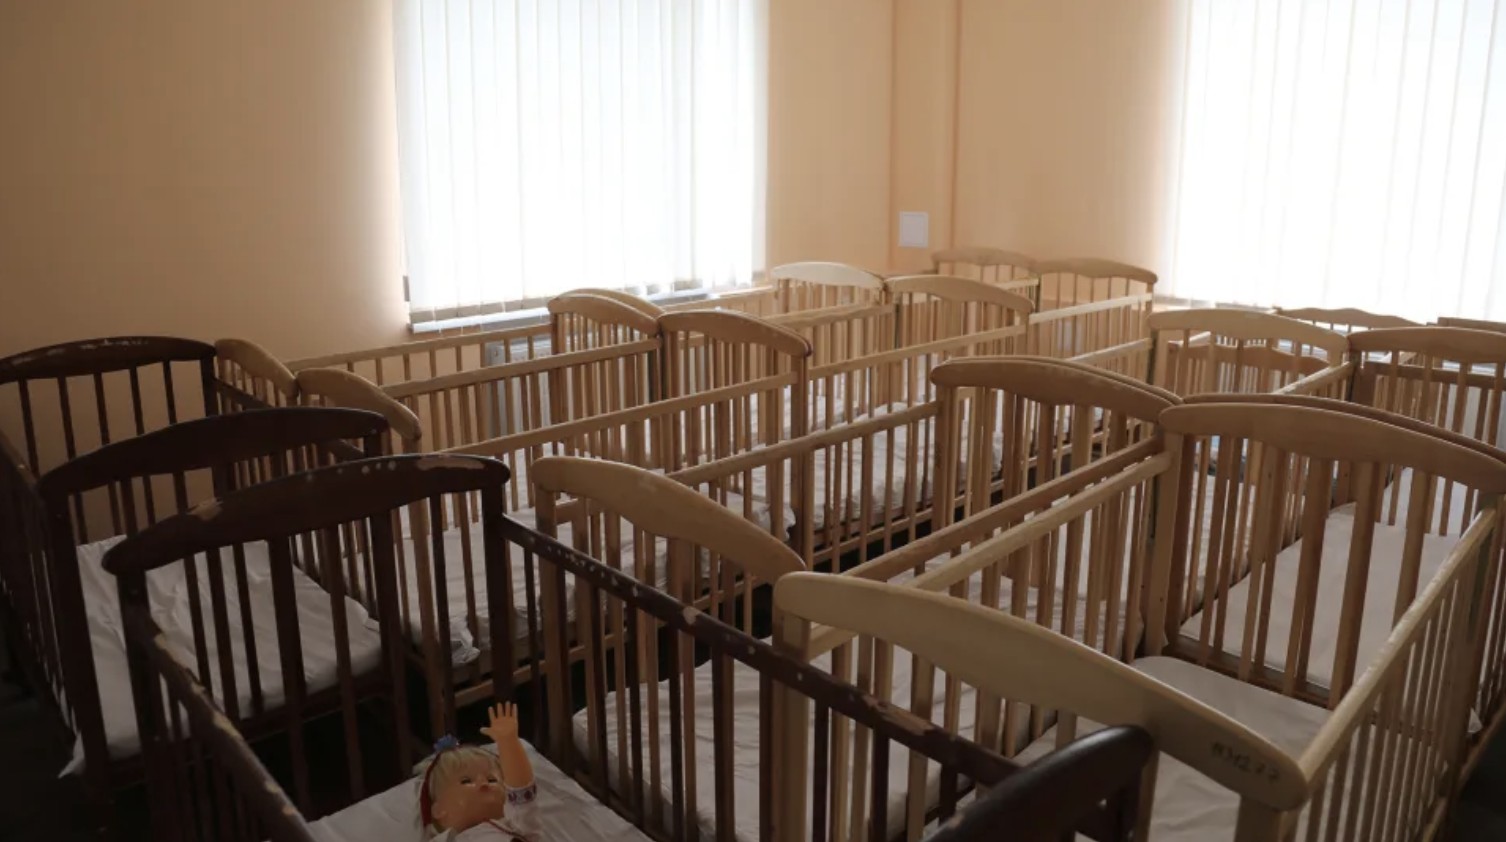 Їхній слід може зникнути: доля малюків, викрадених із Херсонського будинку дитини